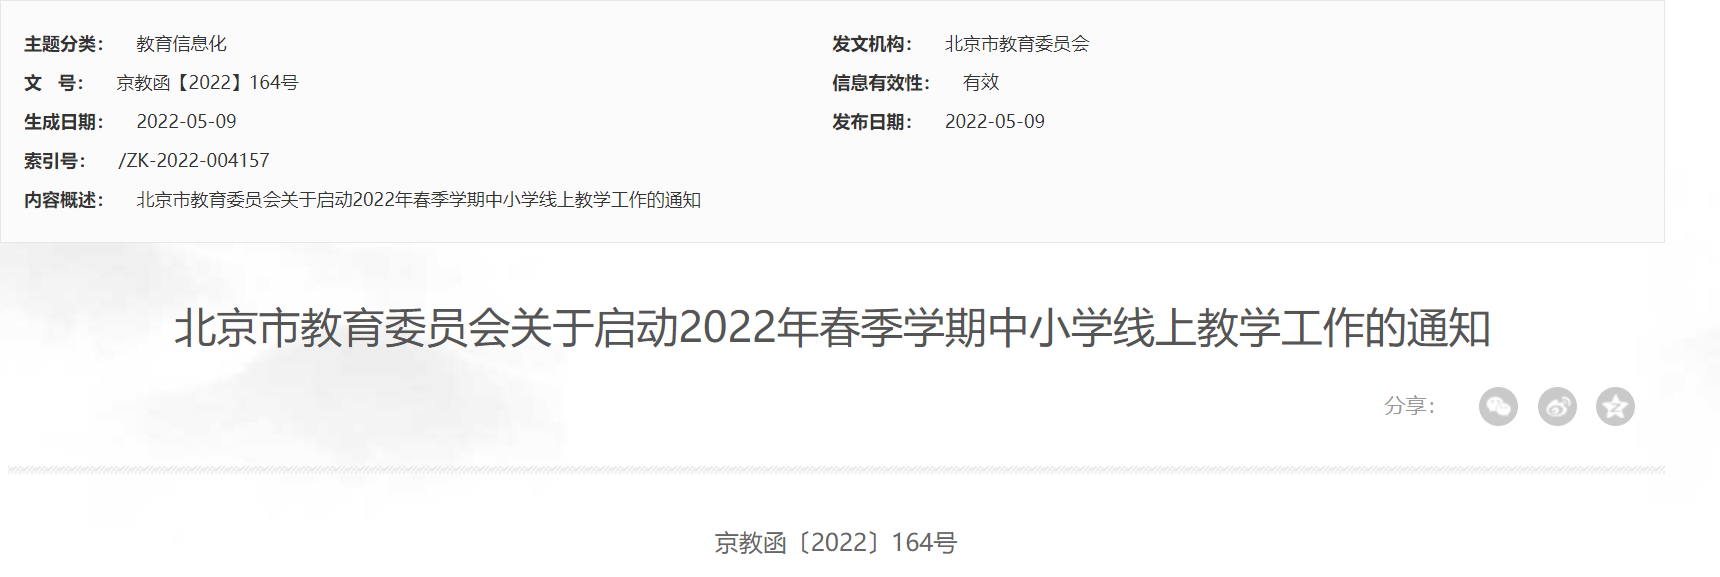 2022年5月北京春季学期中小学线上教学通知